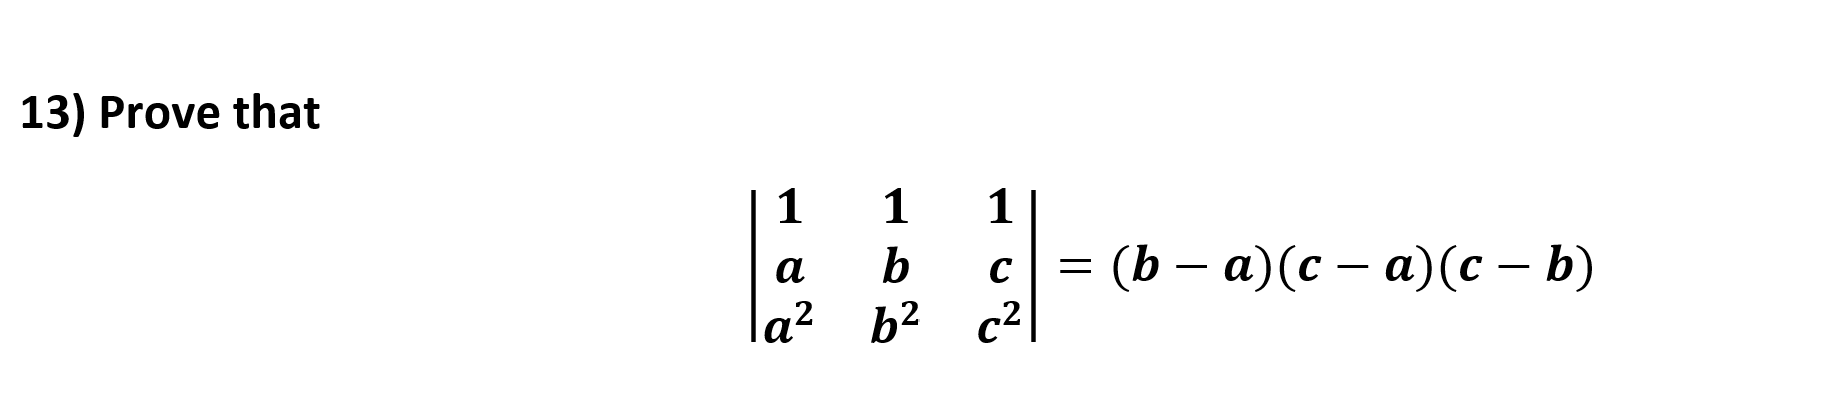 13) Prove that
1
1
1
(b — а)(с — а)(с - b)
b
а
с
_
la2 b2 c2
